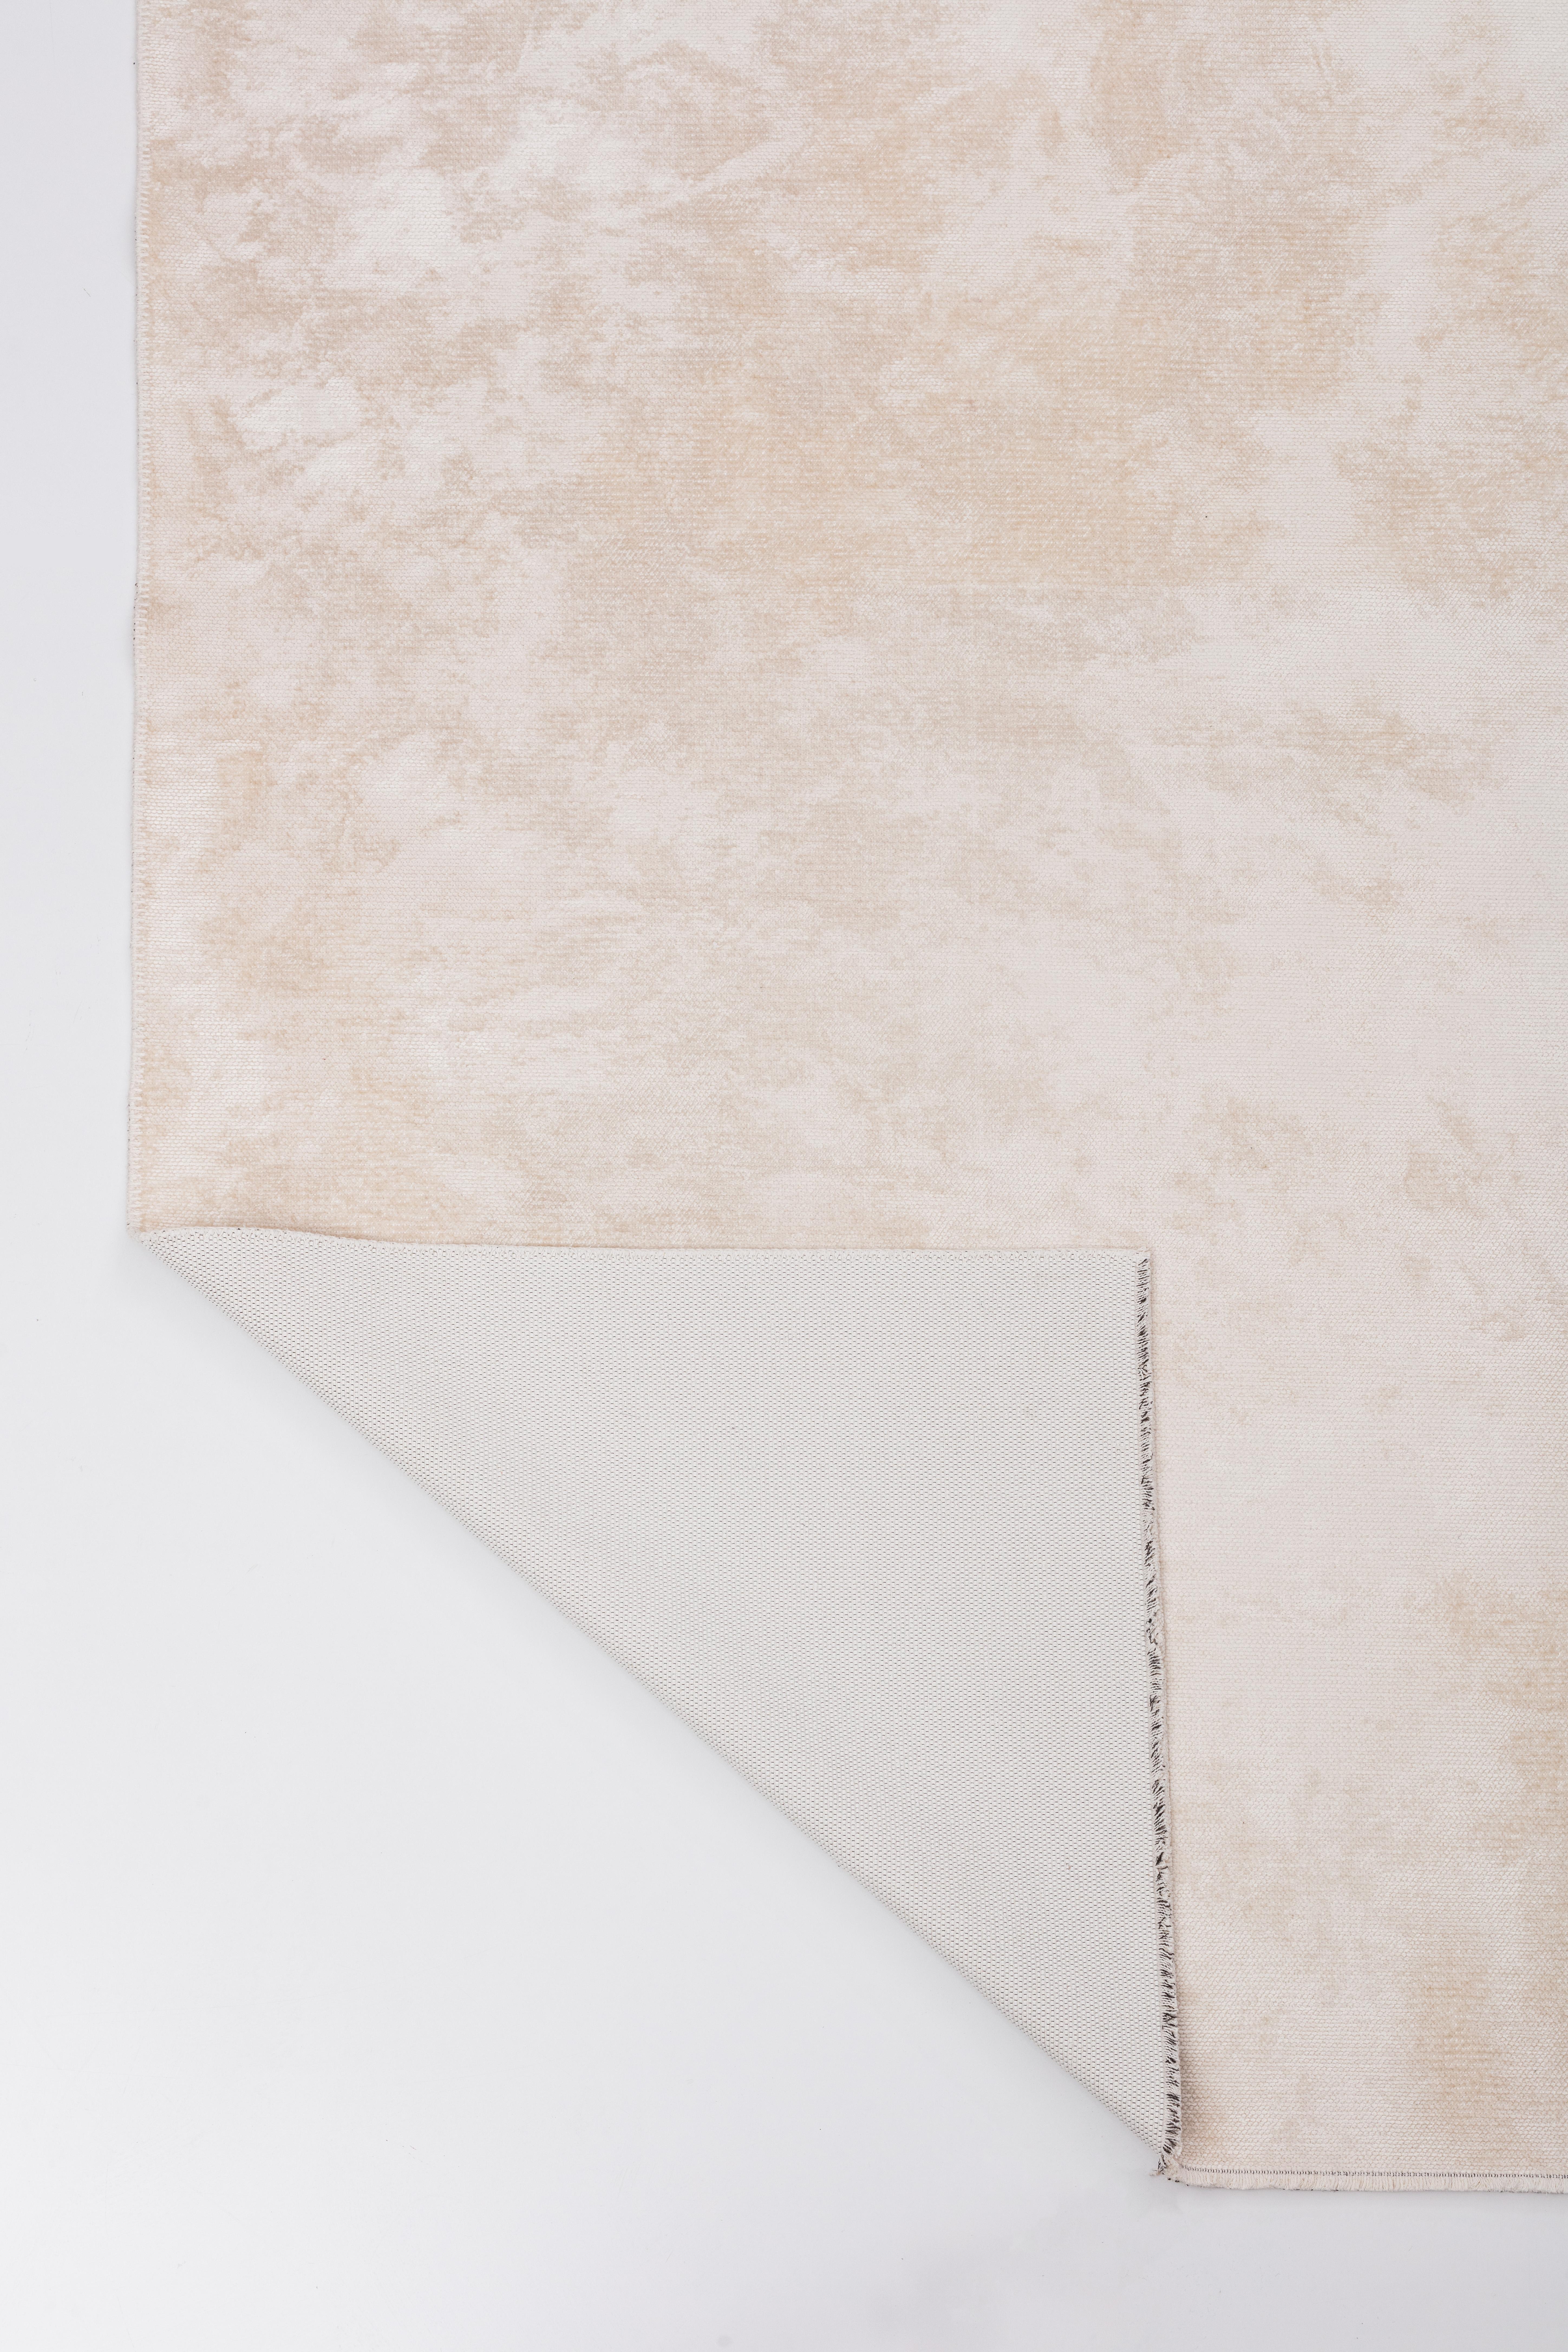 Postmoderne Tapis de luxe moderne de couleur crème et ivoire avec frange en option en vente